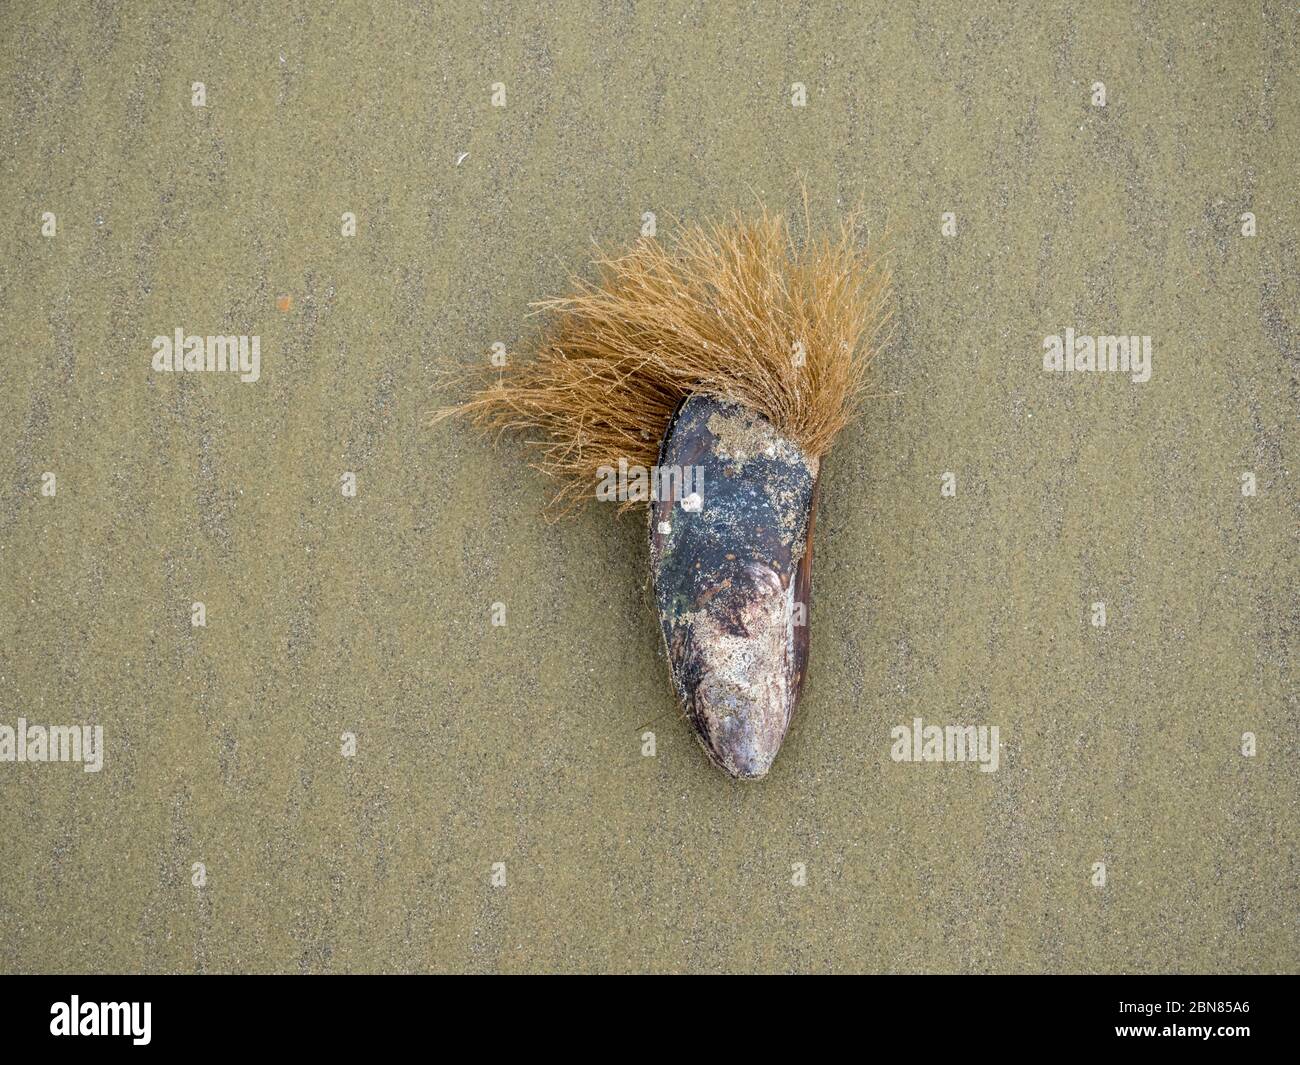 Una concha de mussle en una playa de arena con una gran barba creciendo. Parece una cabeza con pelo. Foto de stock